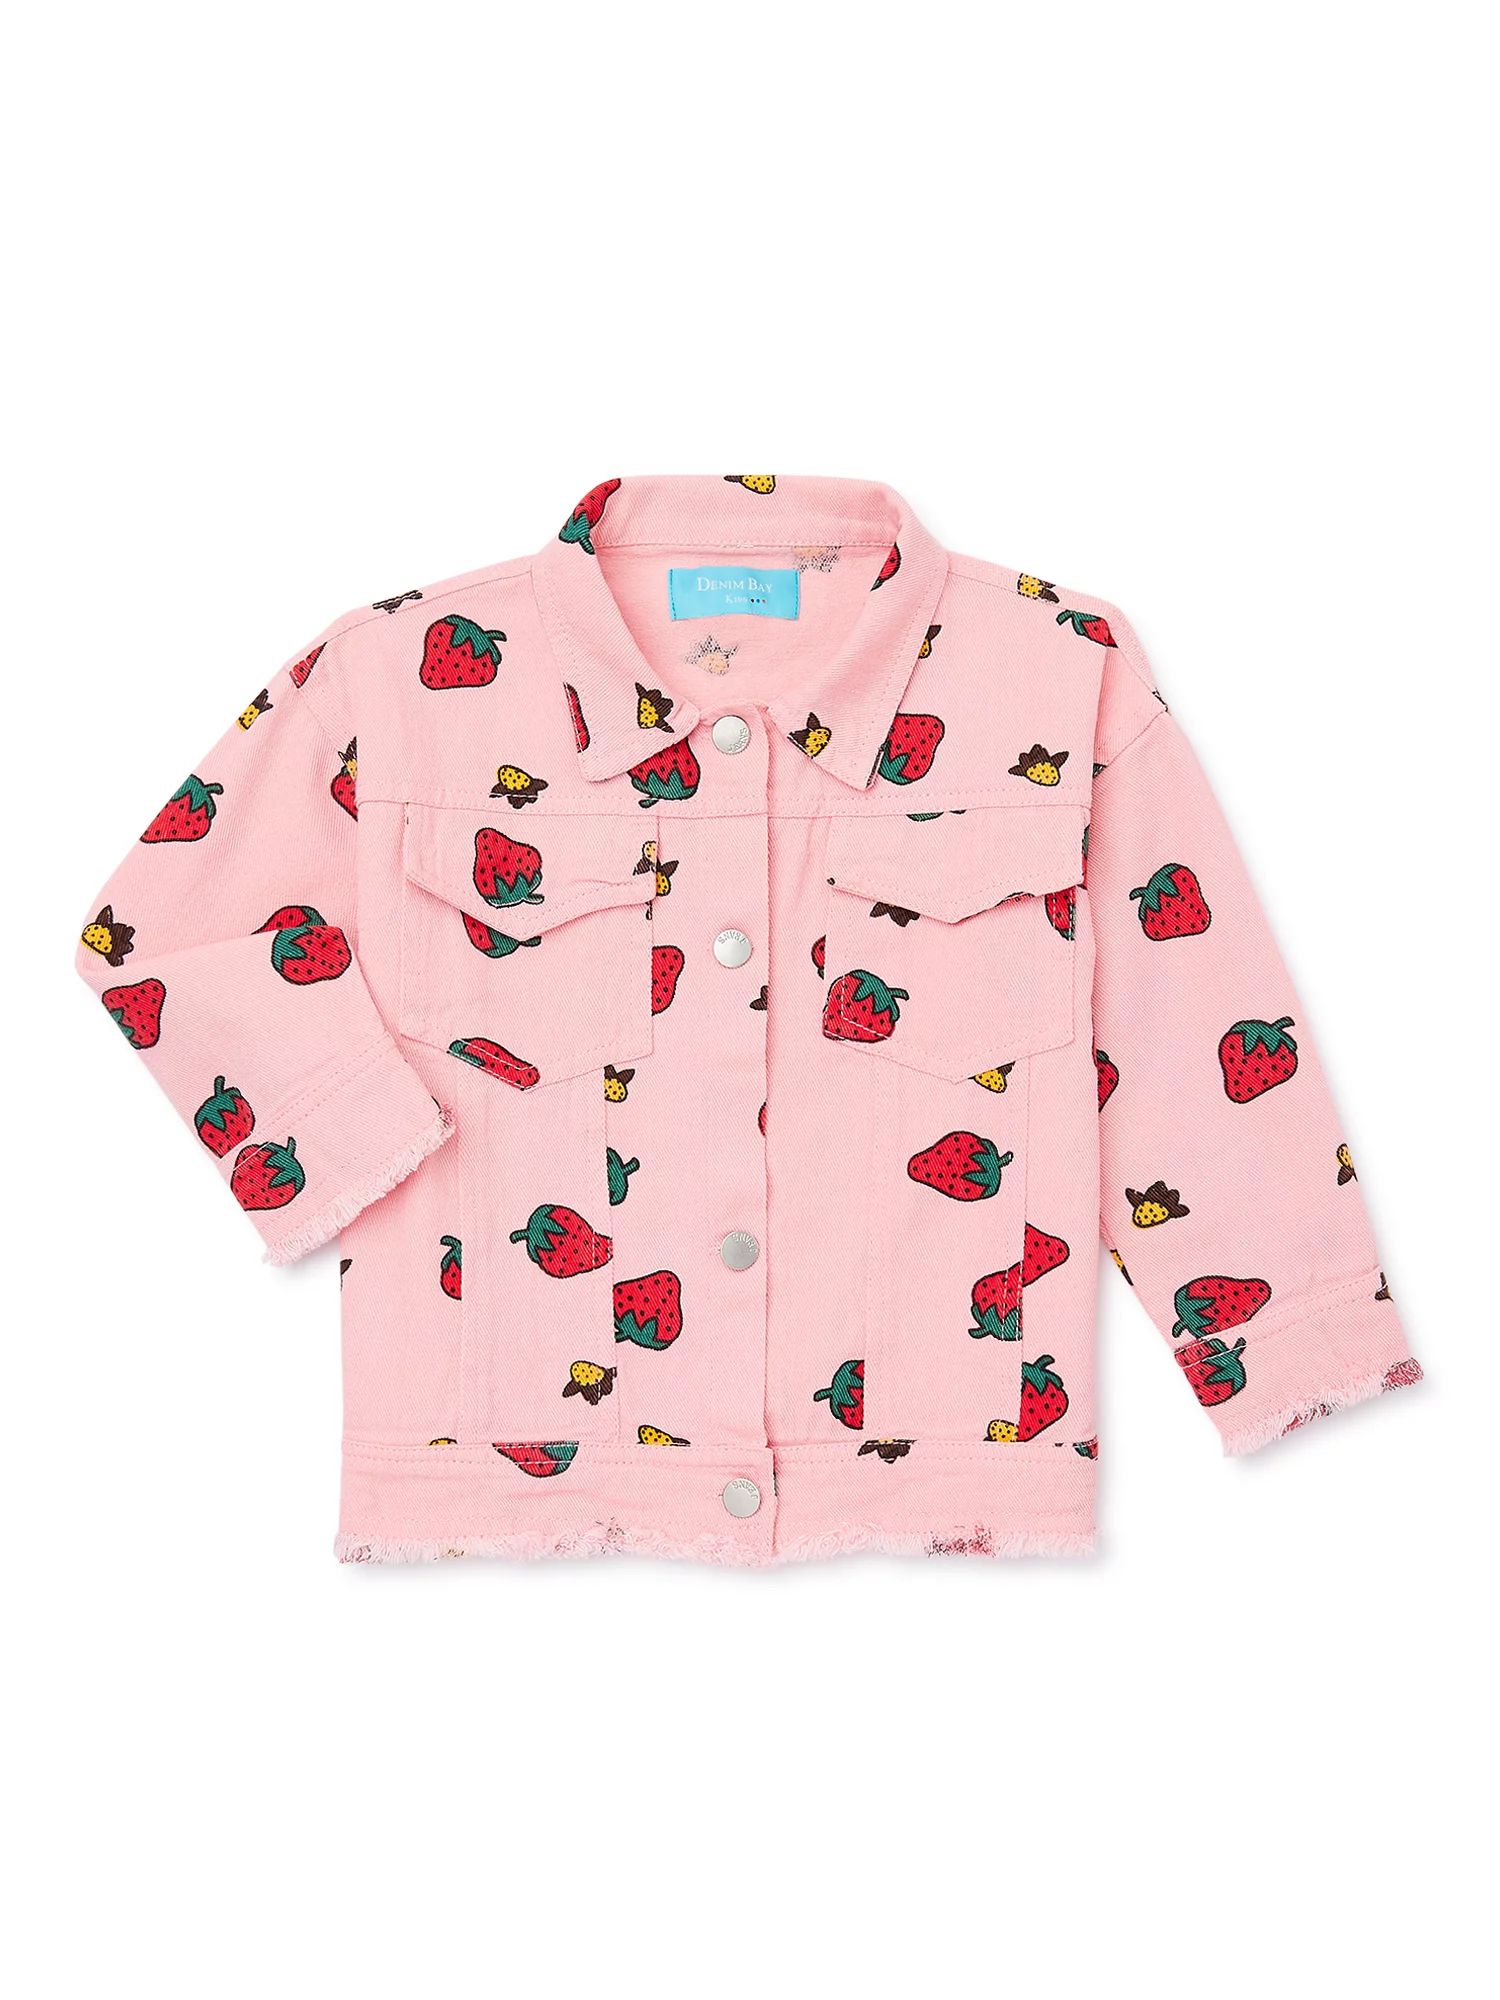 Denim Bay Toddler Girl Print Denim Jacket, Sizes 2T-5T | Walmart (US)